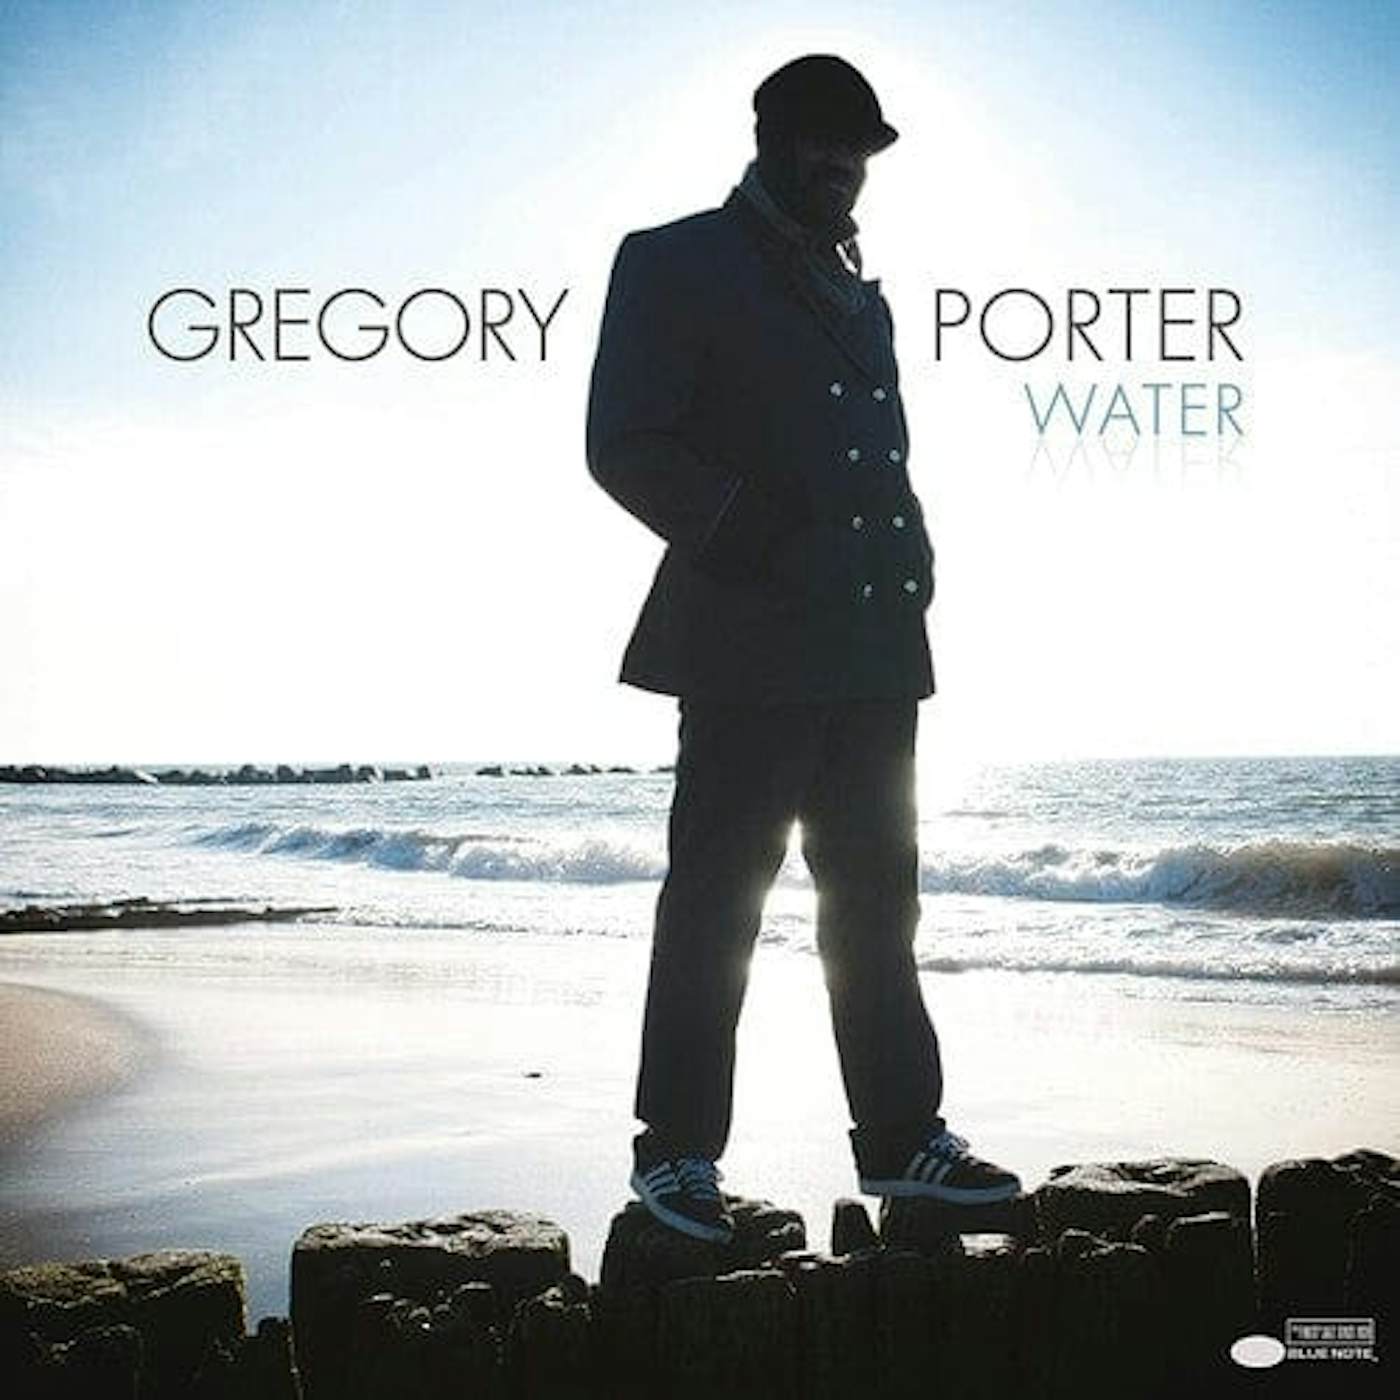 Gregory Porter Water (2LP) vinyl record